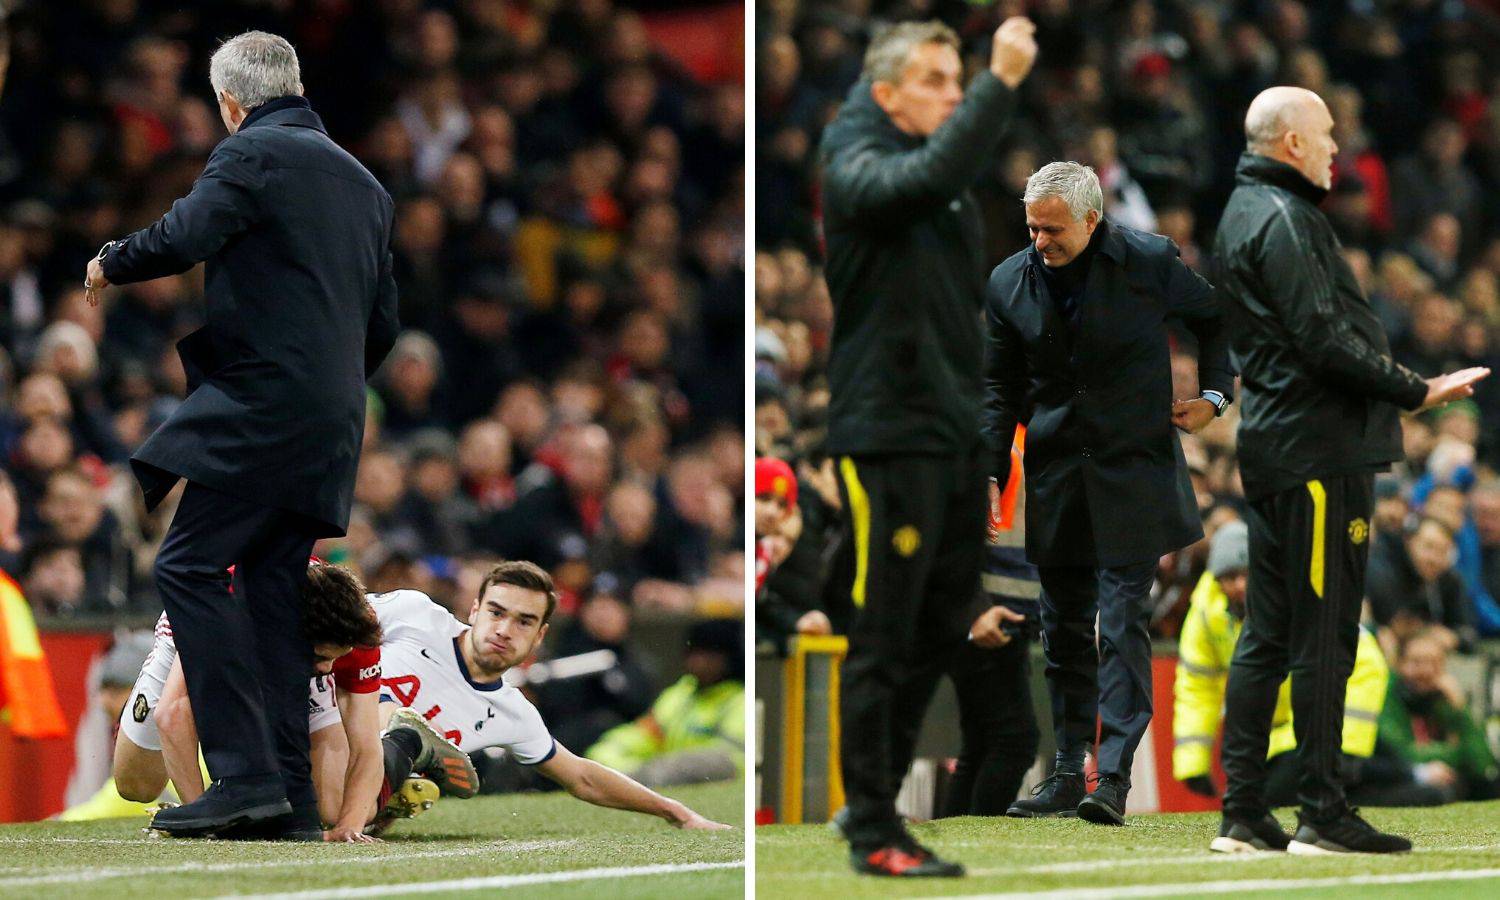 Jose se vratio na Old Trafford, ozlijedili ga, a još je i izgubio...